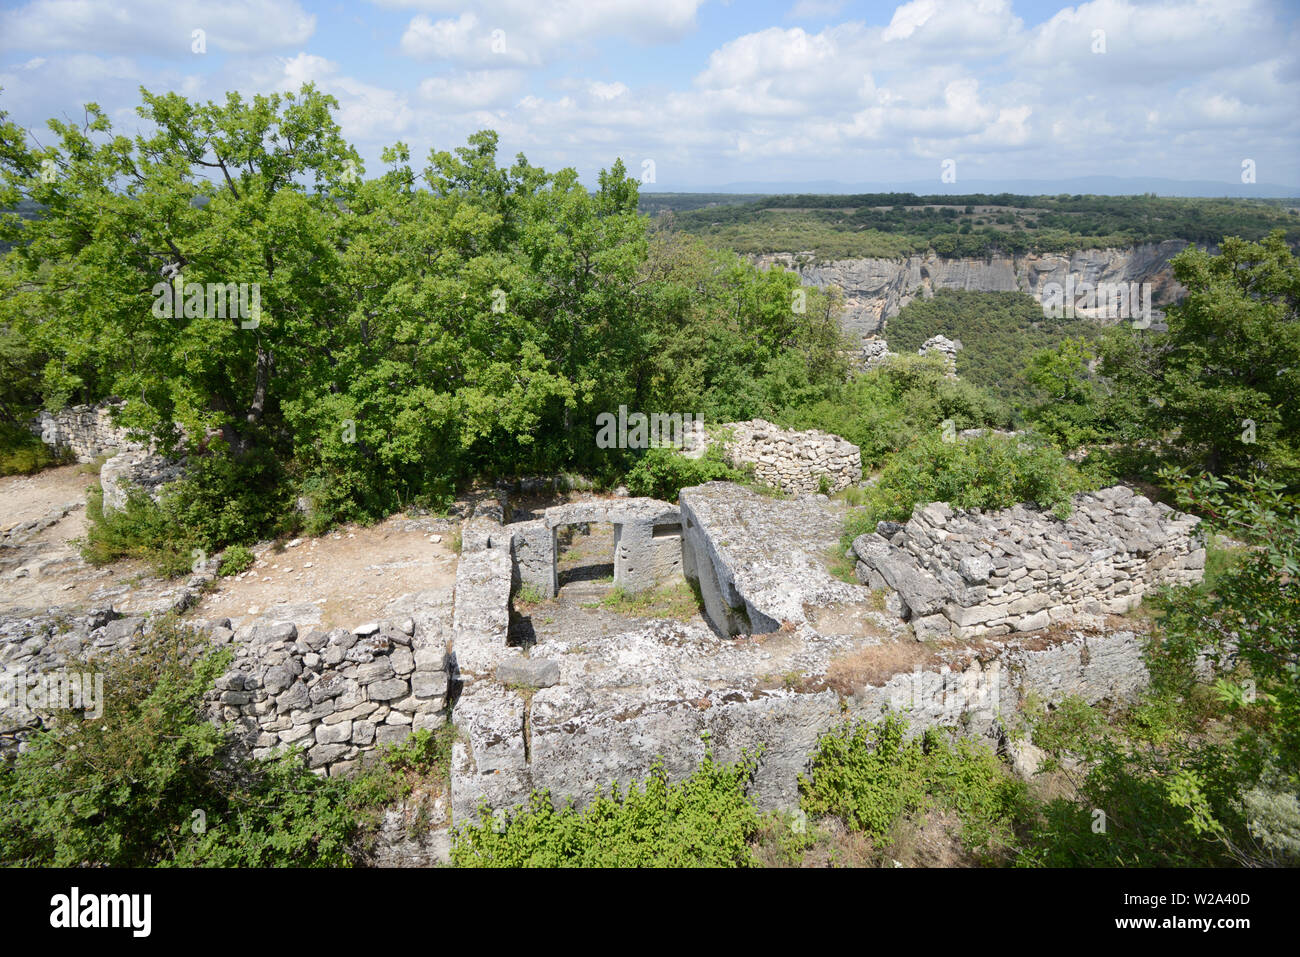 Ruiniert Stone-Carved Haus mit steinernen Türsturz des zerstörten Dorf Buoux Fort Buoux Luberon Provence Frankreich Stockfoto